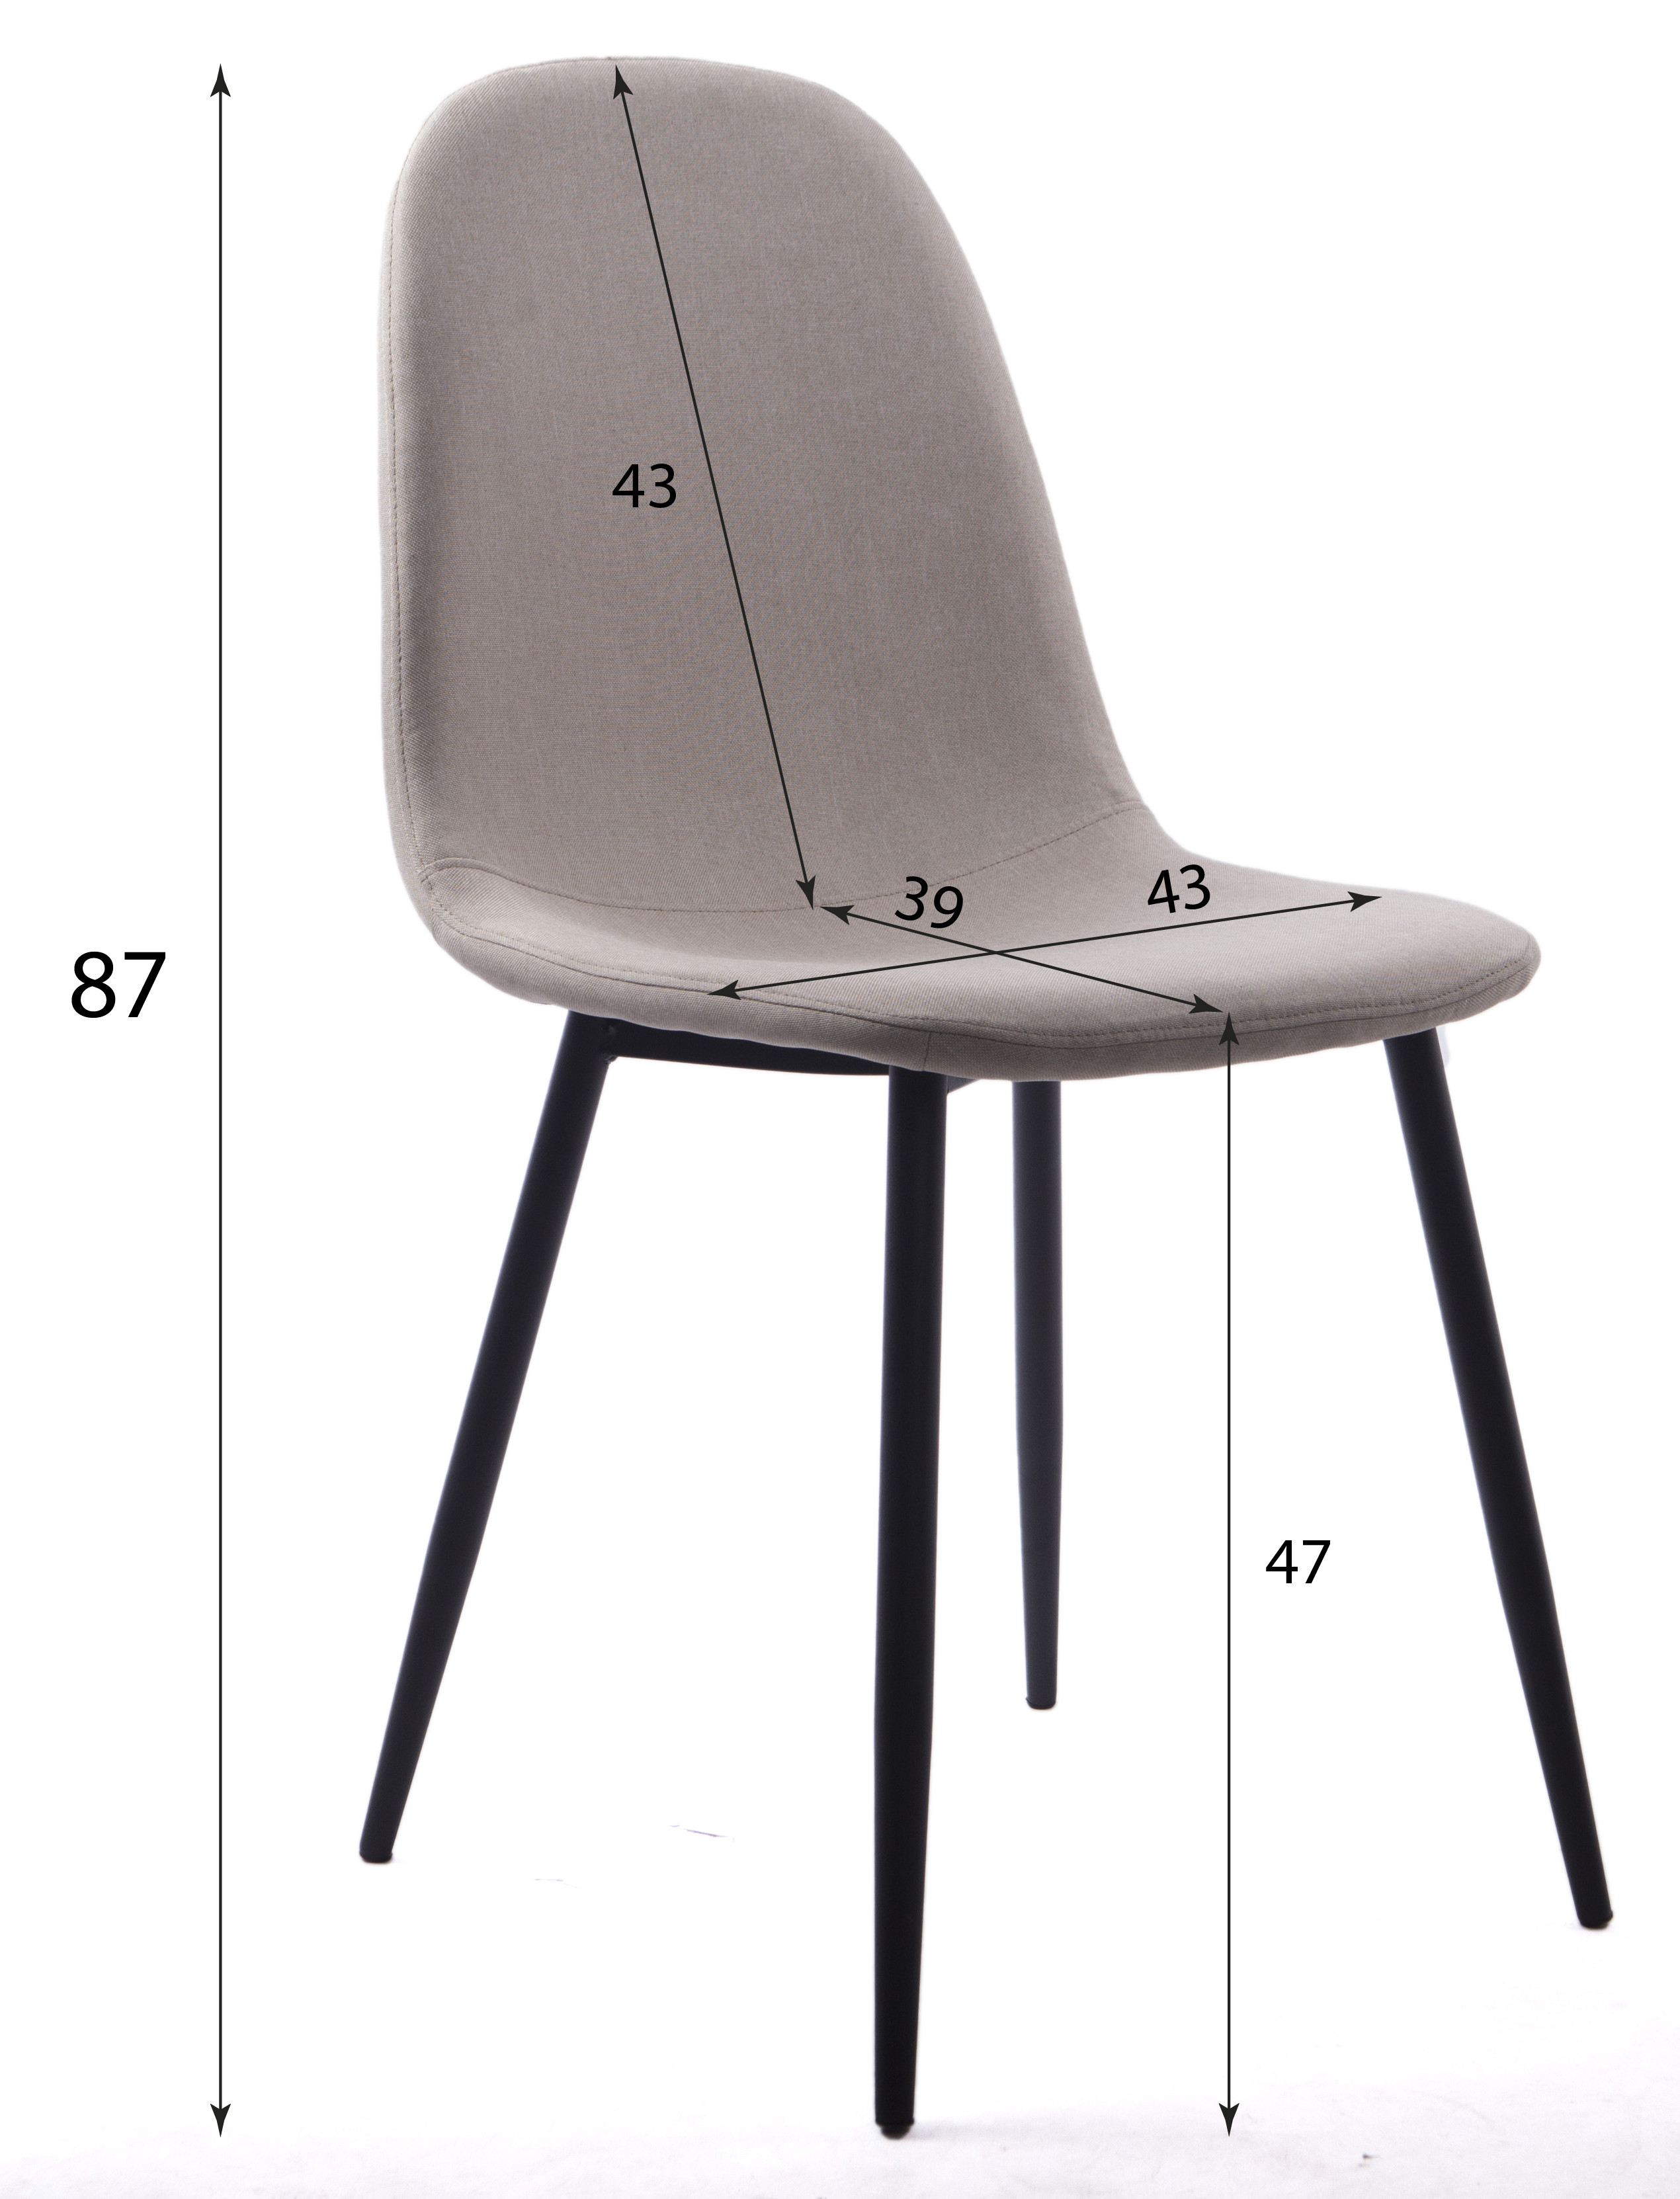 Set tří jídelních židlí DART světle šedé (černé nohy)